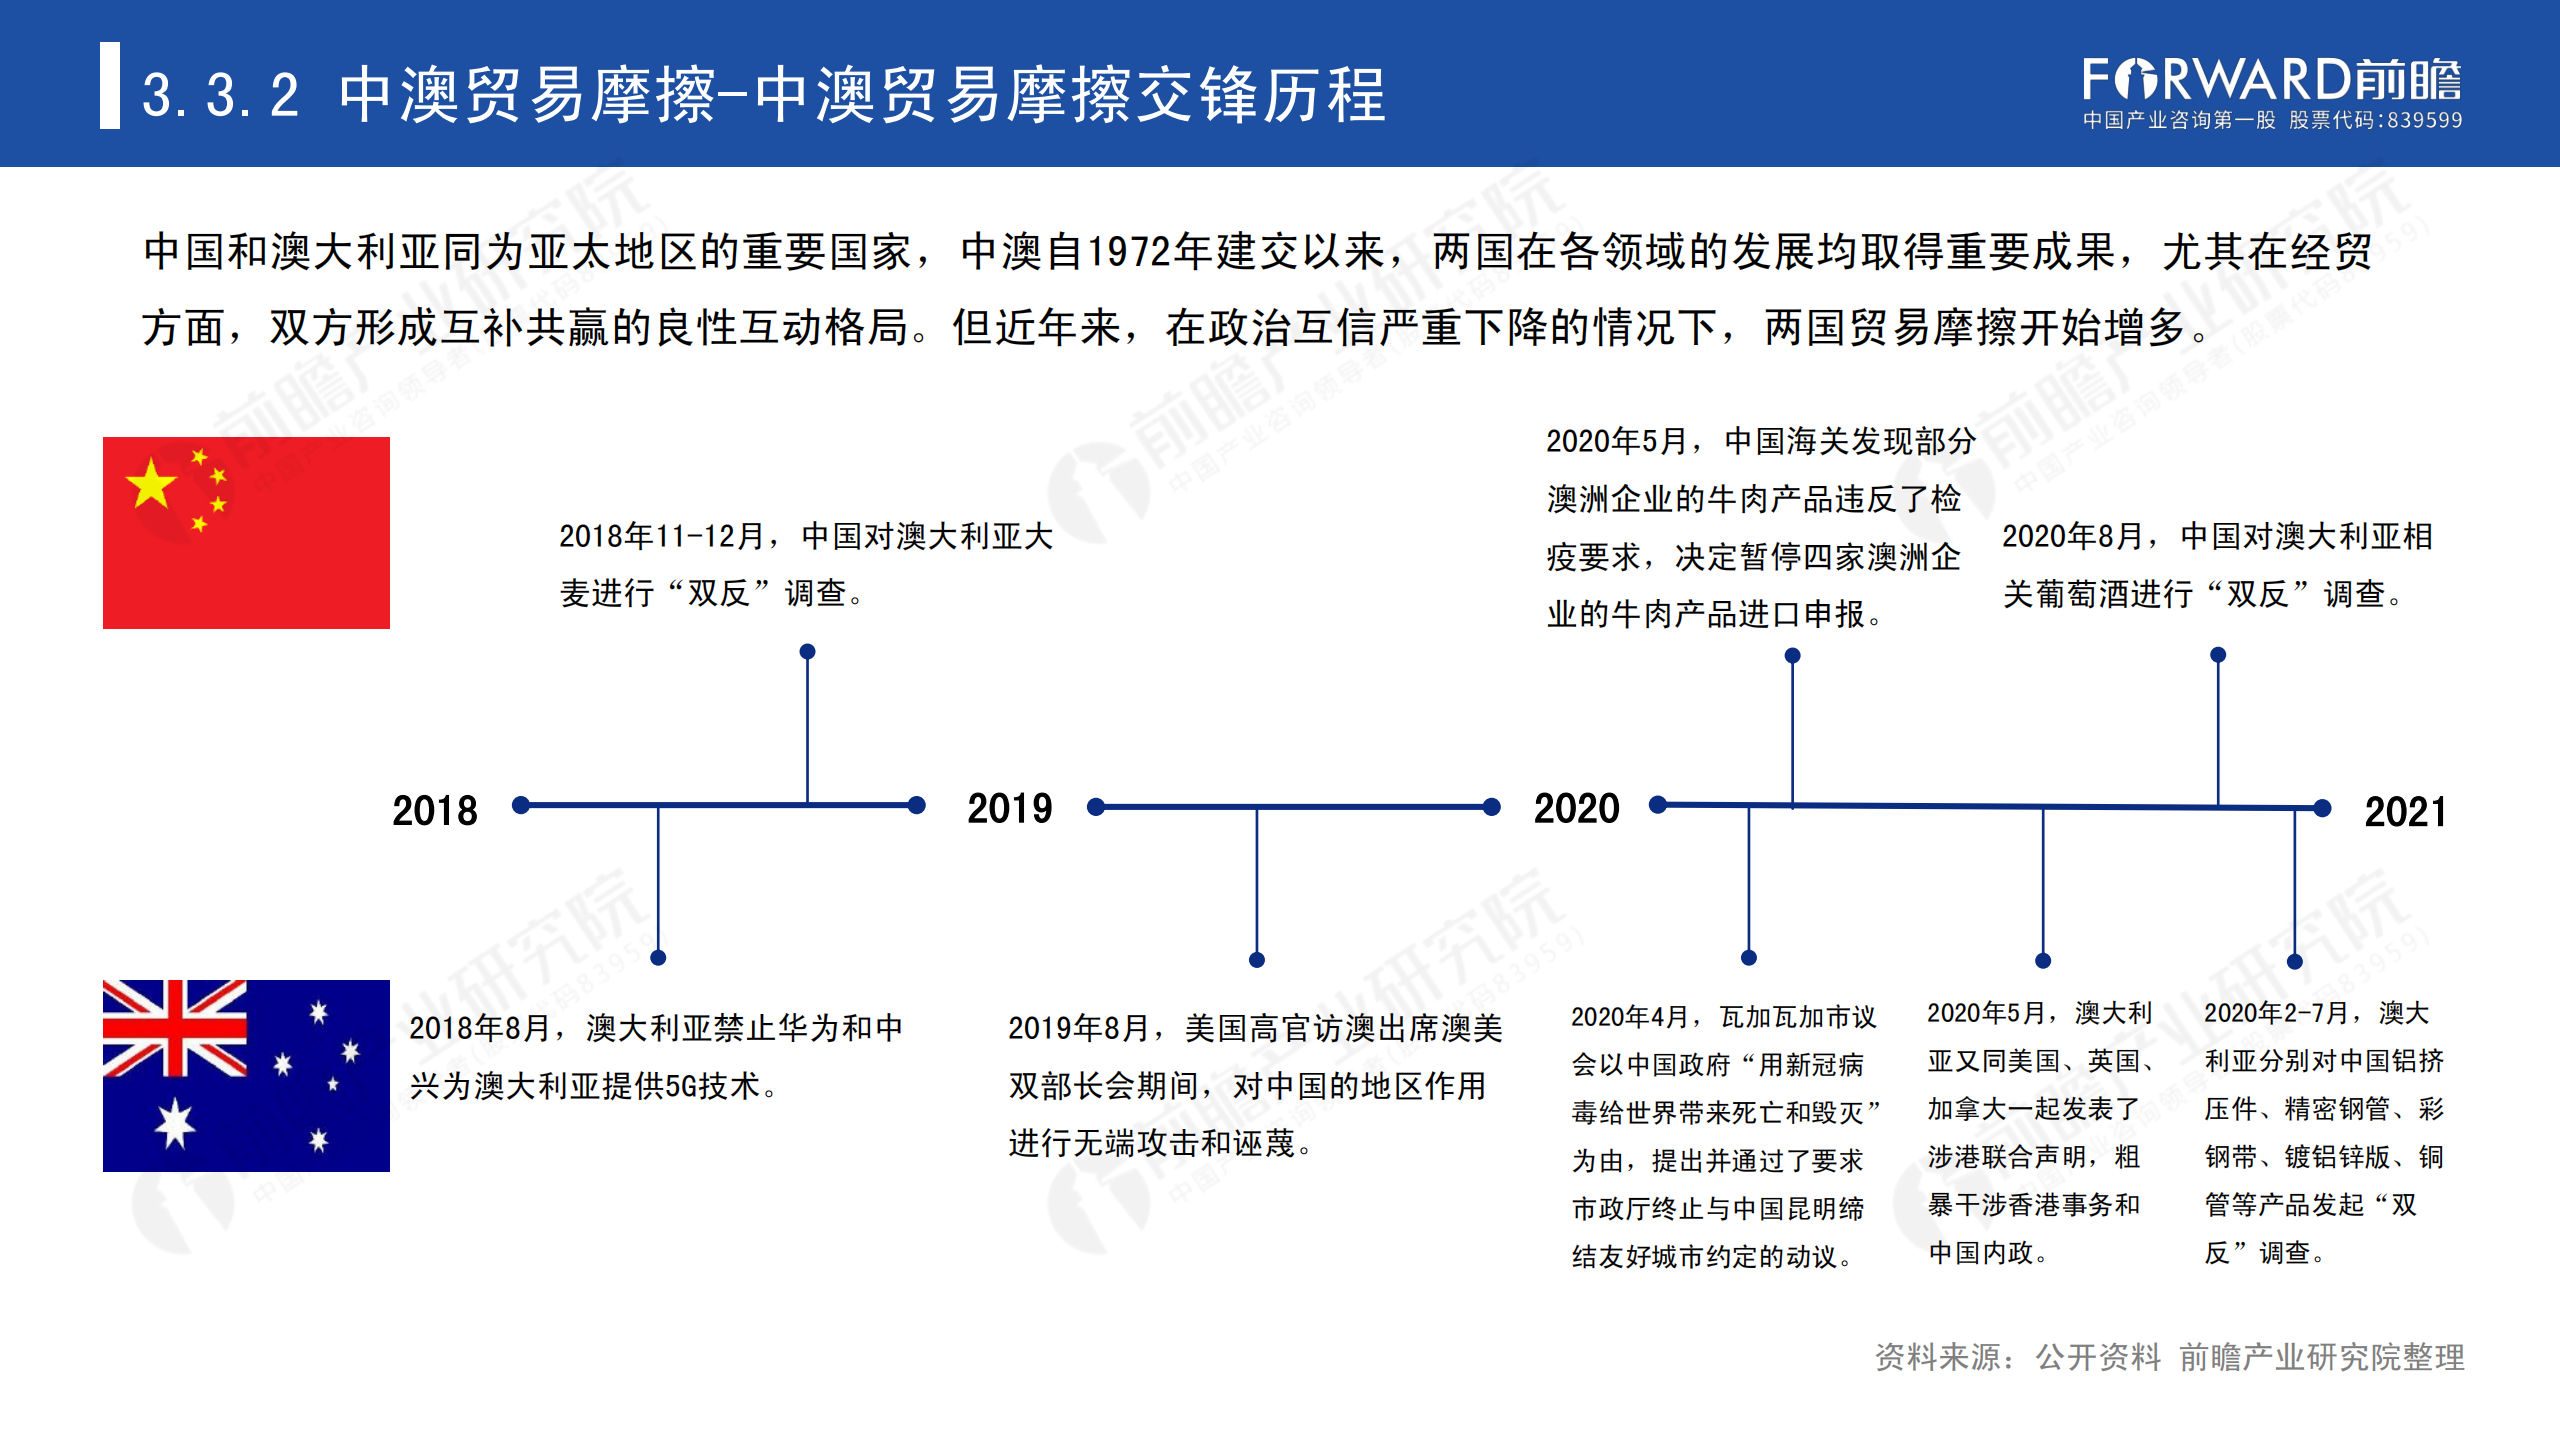 2020年中国贸易摩擦全景回顾-前瞻-2021-64页_43.png